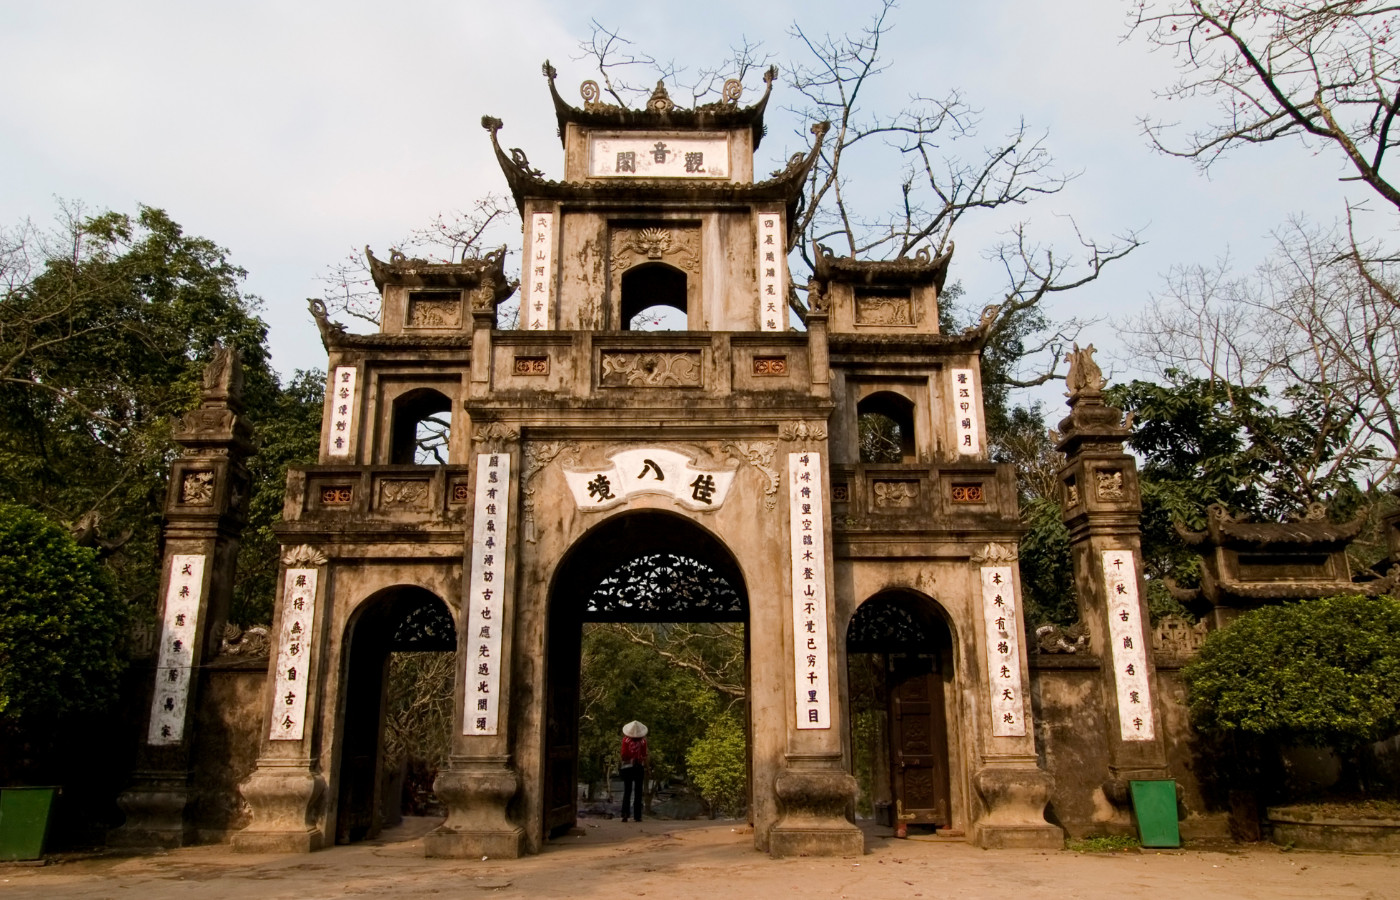 Khám phá chùa Hương - Một trong những ngôi chùa có lịch sử lâu đời nhất tại Hà Nội 10